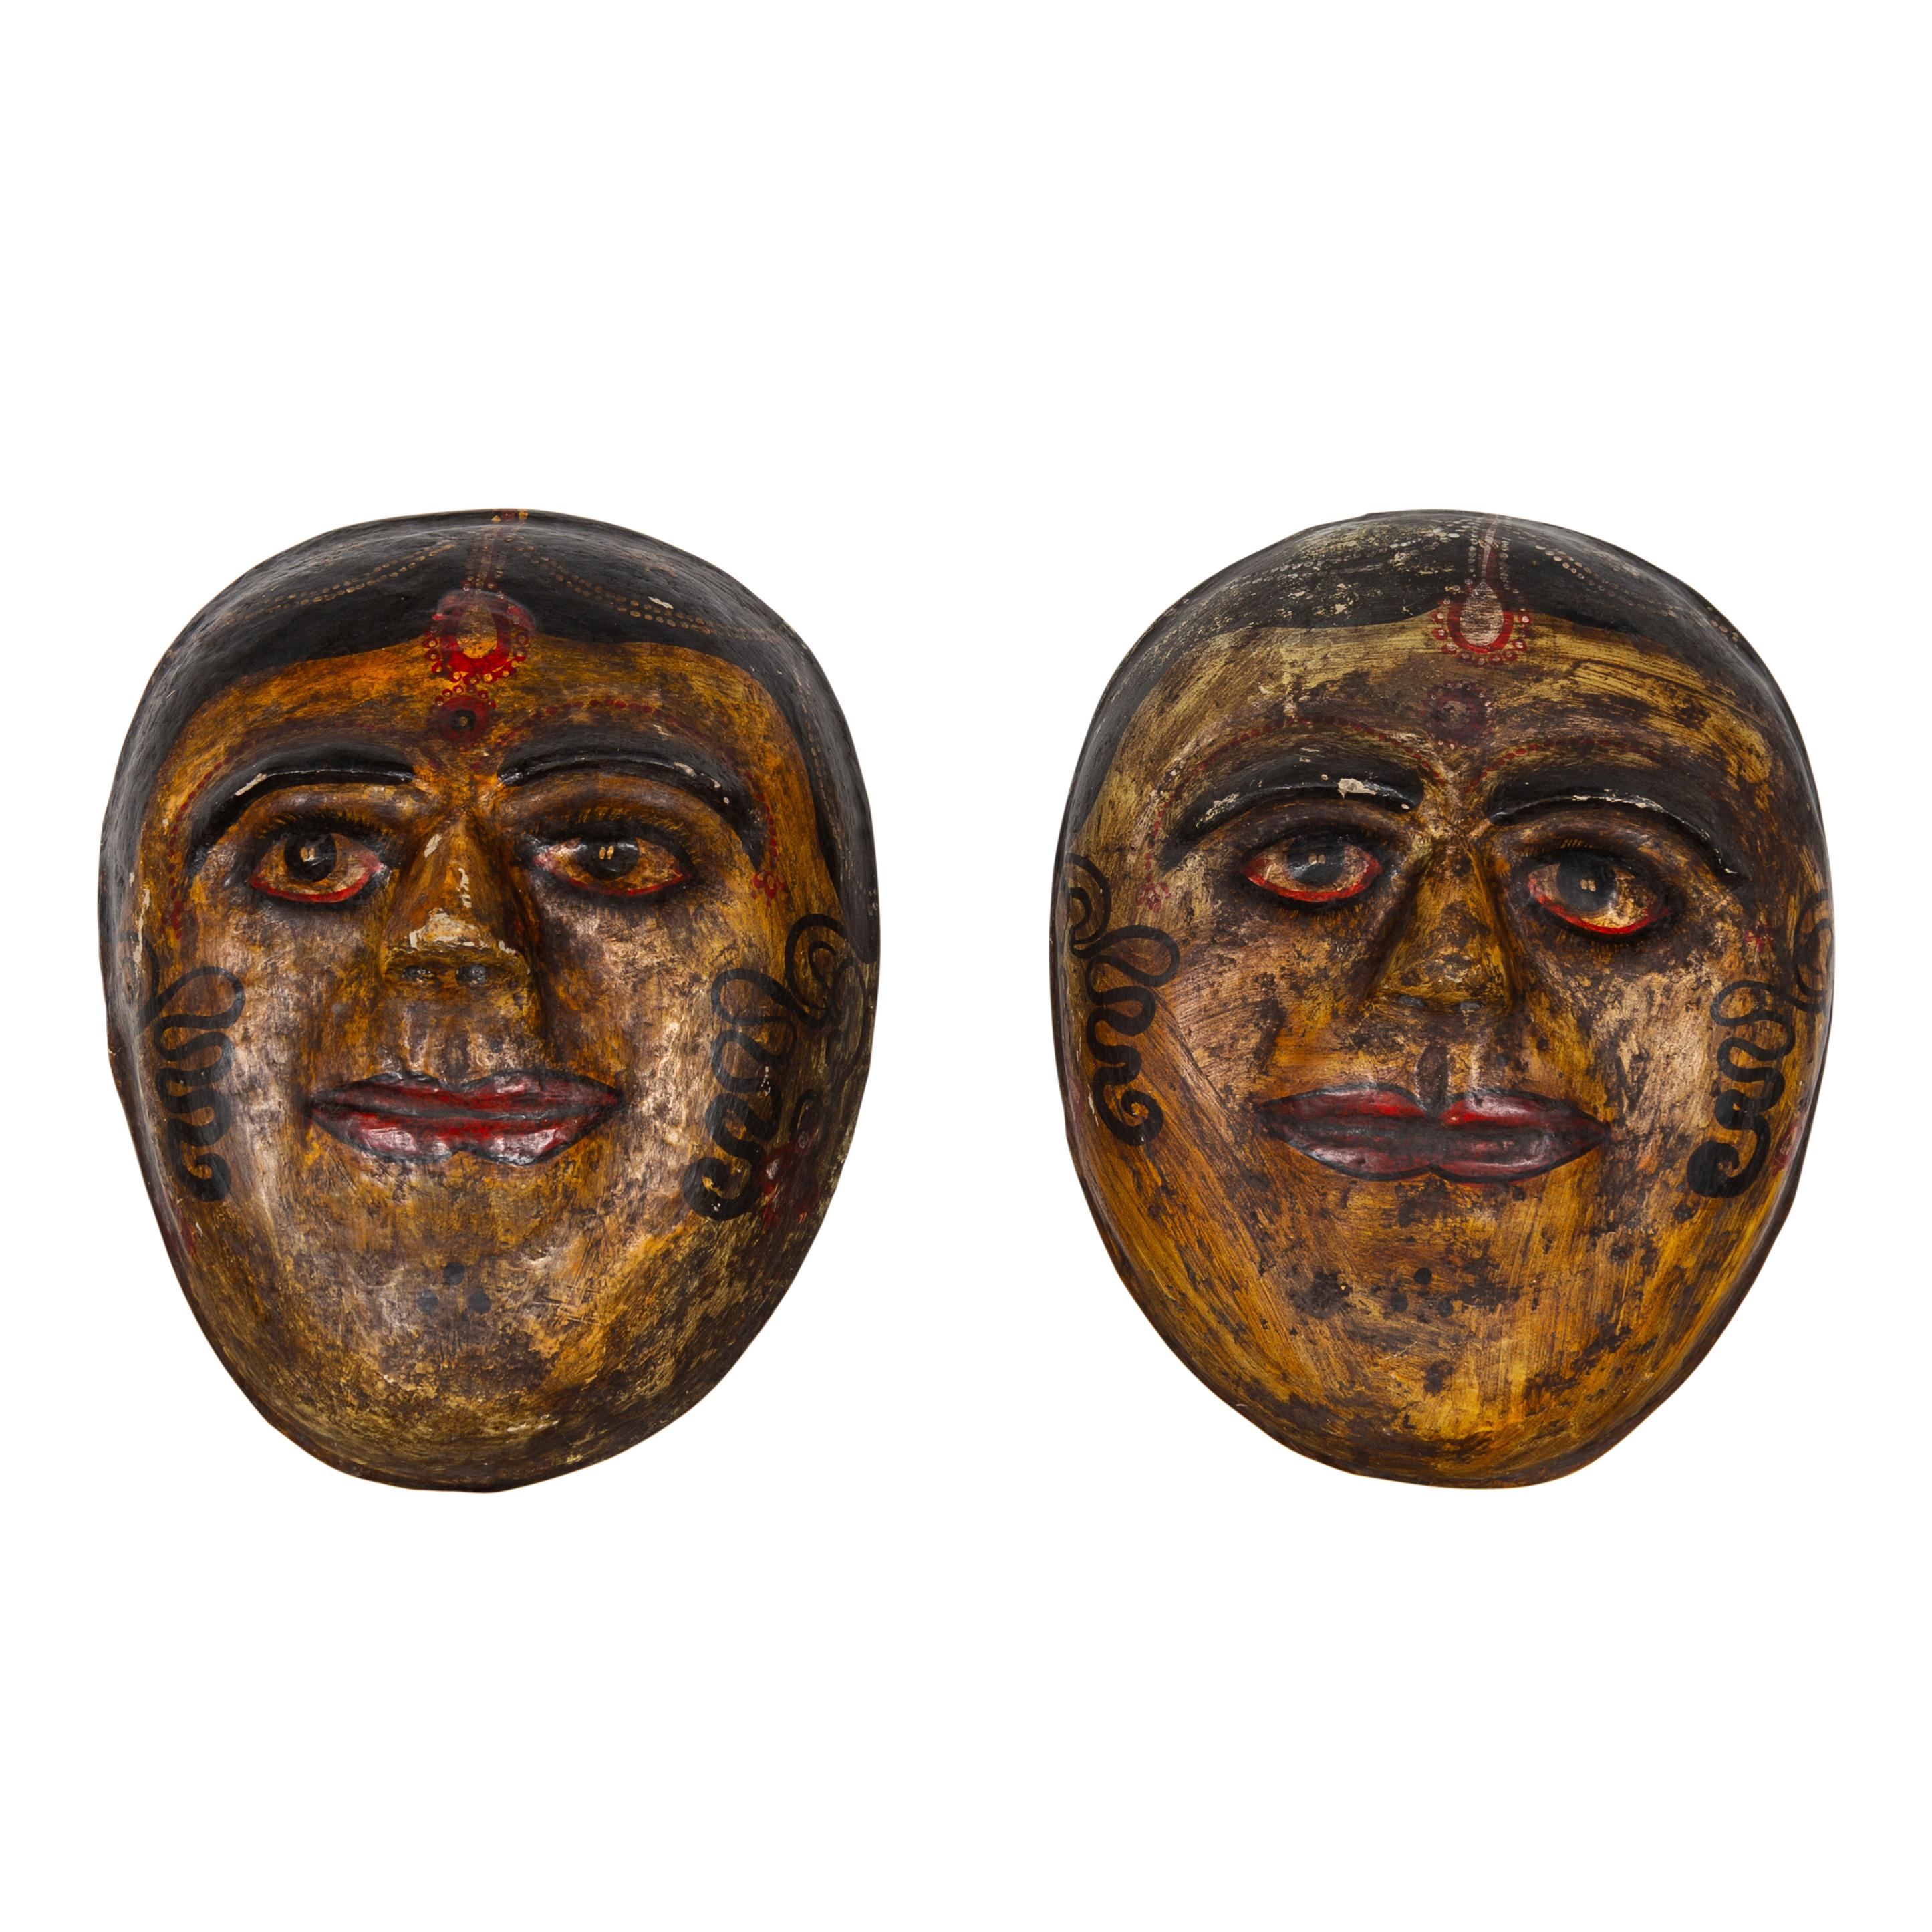 Zwei antike, handbemalte indische Pappmaschee-Gesichtsmasken aus dem frühen 20. Jahrhundert, die indische Bräute darstellen. Sie werden einzeln vermarktet und verkauft. Jede dieser Gesichtsmasken stellt eine indische Braut dar und hat eine